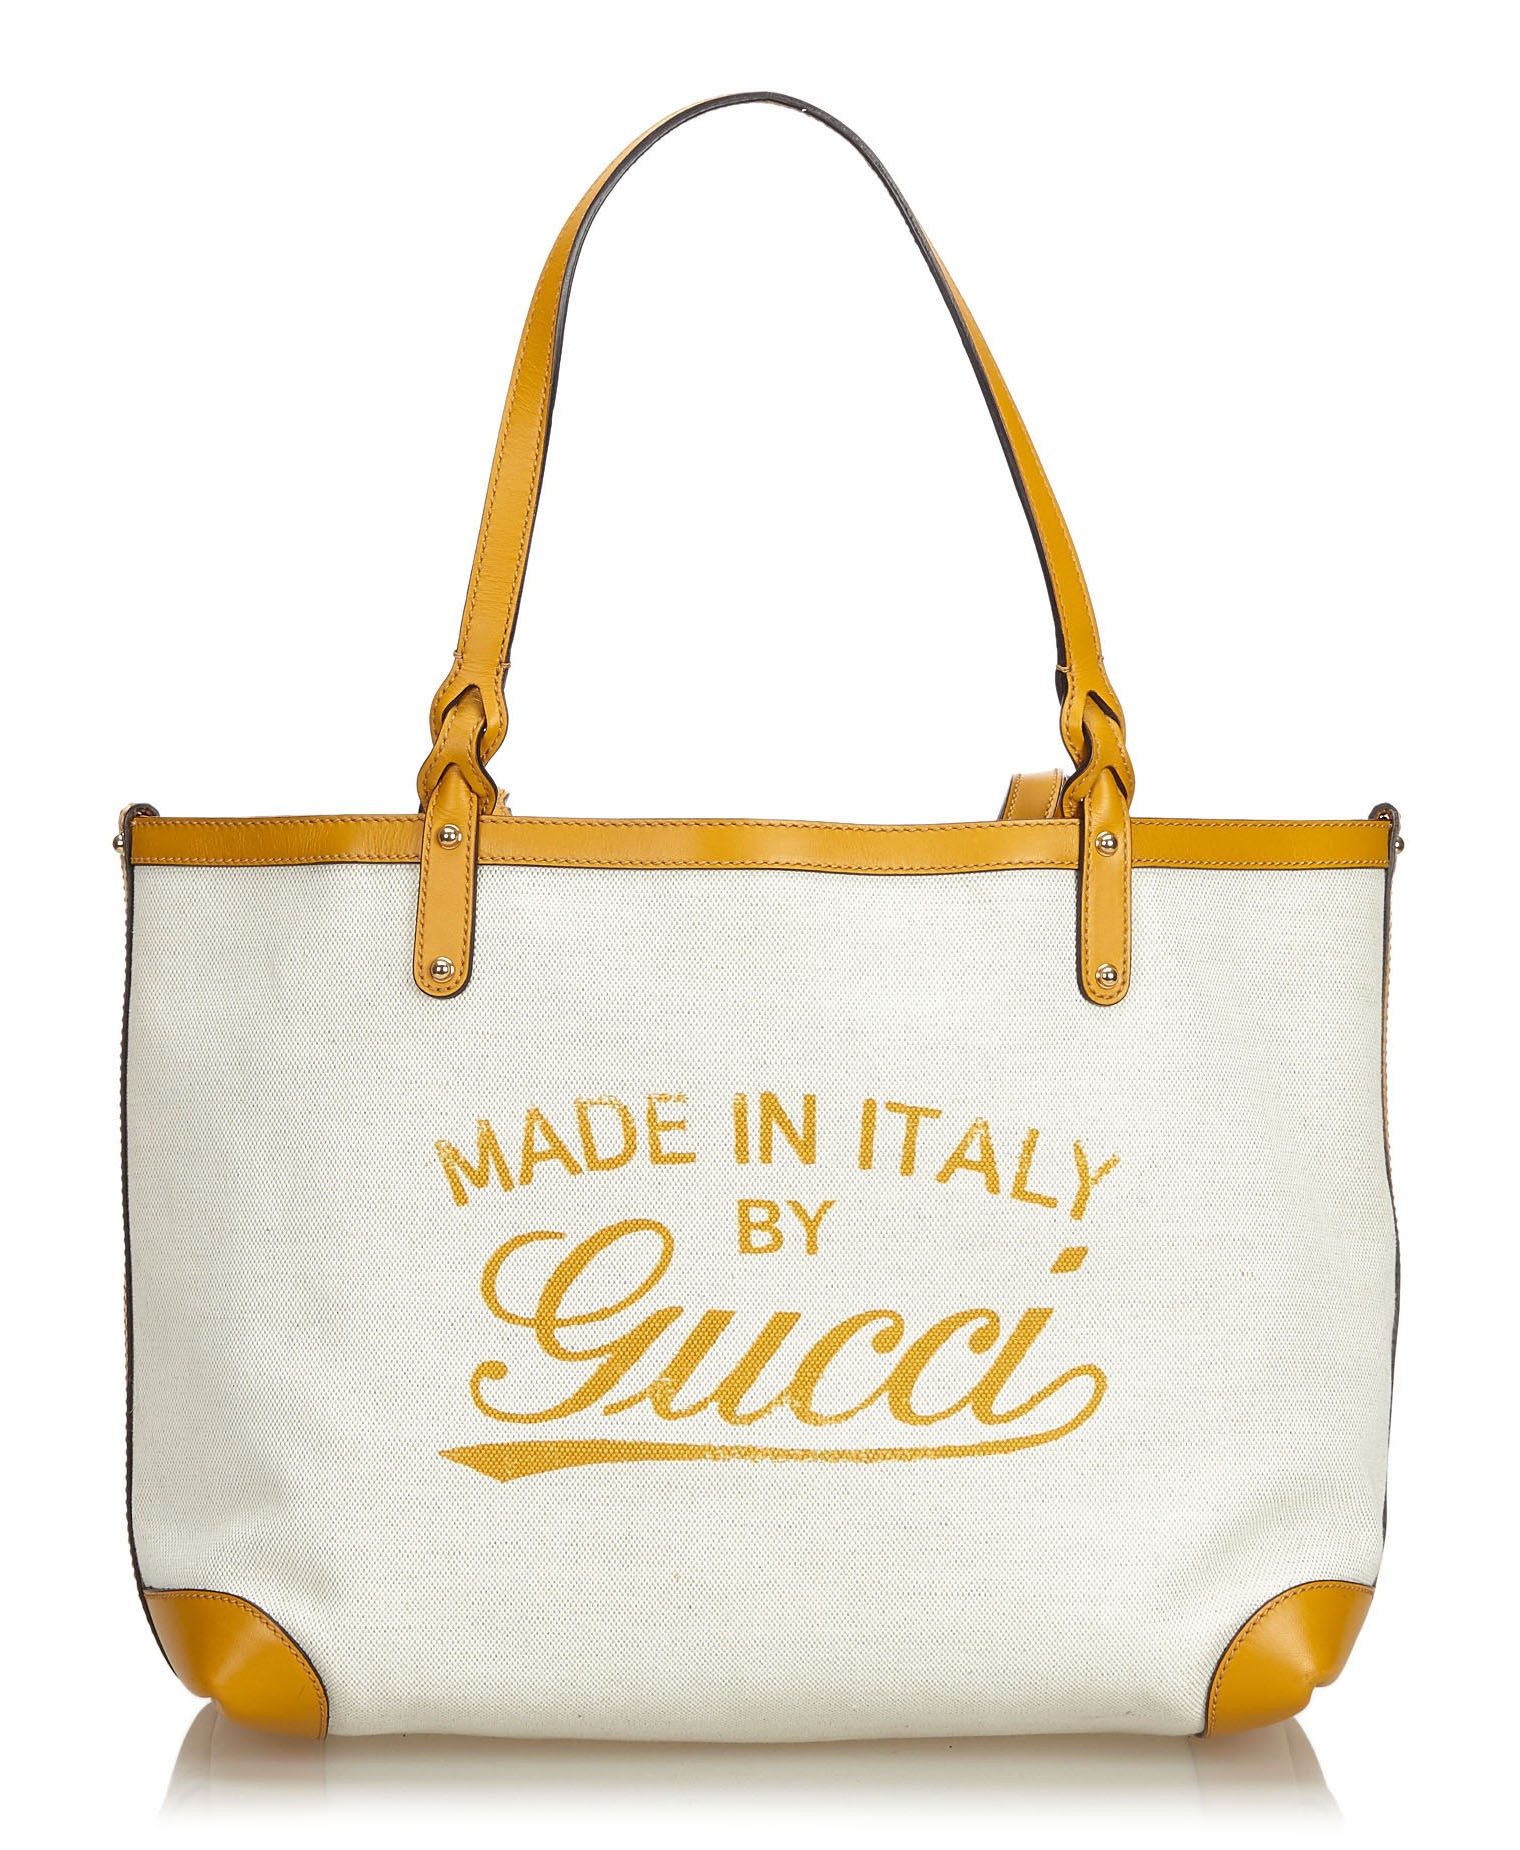 white gucci tote bag